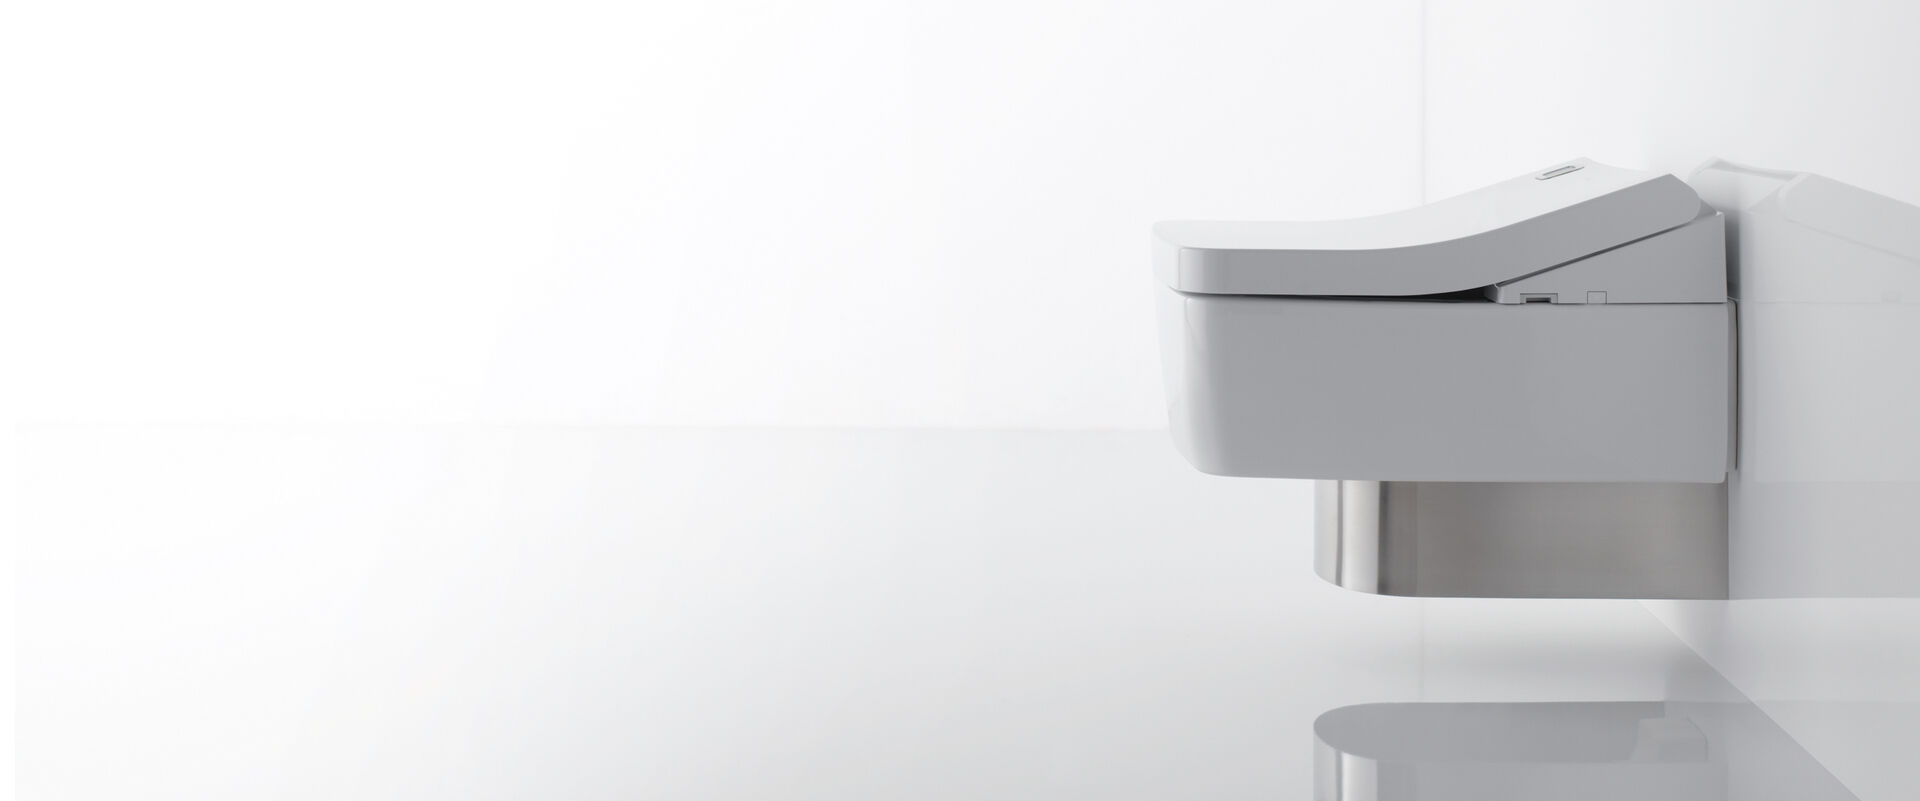 Dusch-WC SG von TOTO Europe in der Seitenansicht. Man erkennt die Chromabdeckung unter dem WC und den Washlet-Aufsatz.